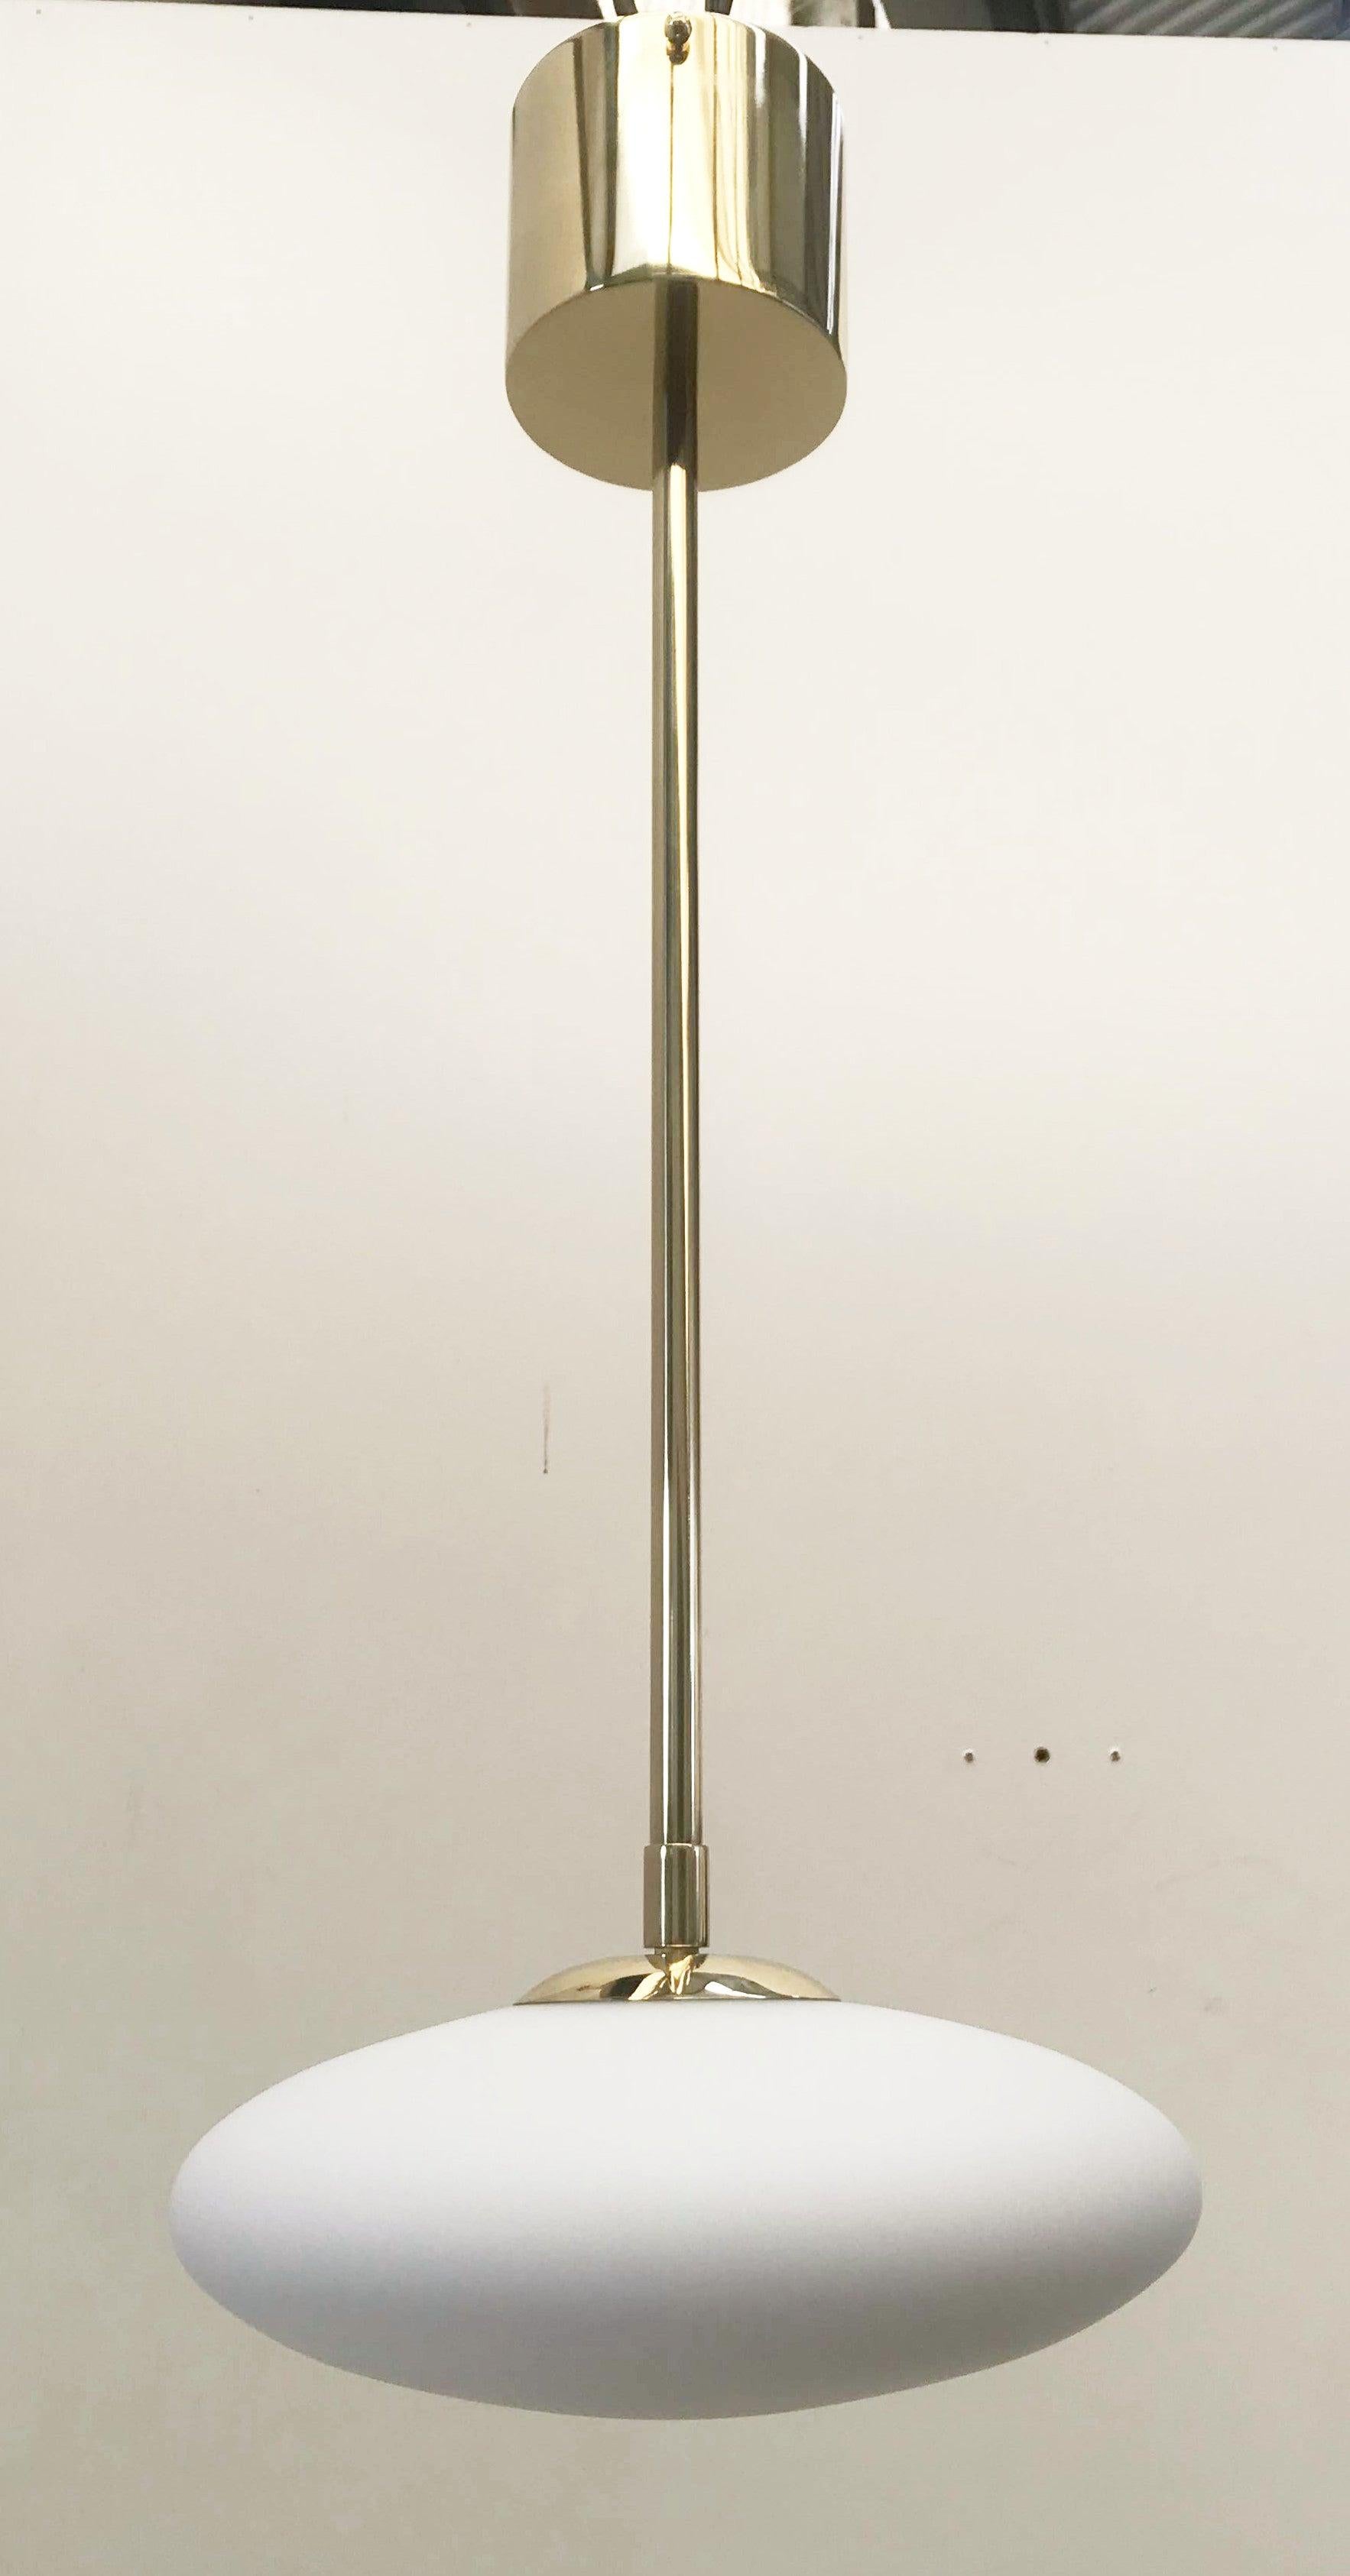 Italienische Pendelleuchte mit Murano-Glasschirm, montiert auf Messingrahmen / Made in Italy

Entworfen von Fabio Ltd, inspiriert vom Stil von Angelo Lelli und Arredoluce

1 Leuchte / Typ E12 oder E14 / je max. 40W

Höhe: 26,5 Zoll/Durchmesser: 12